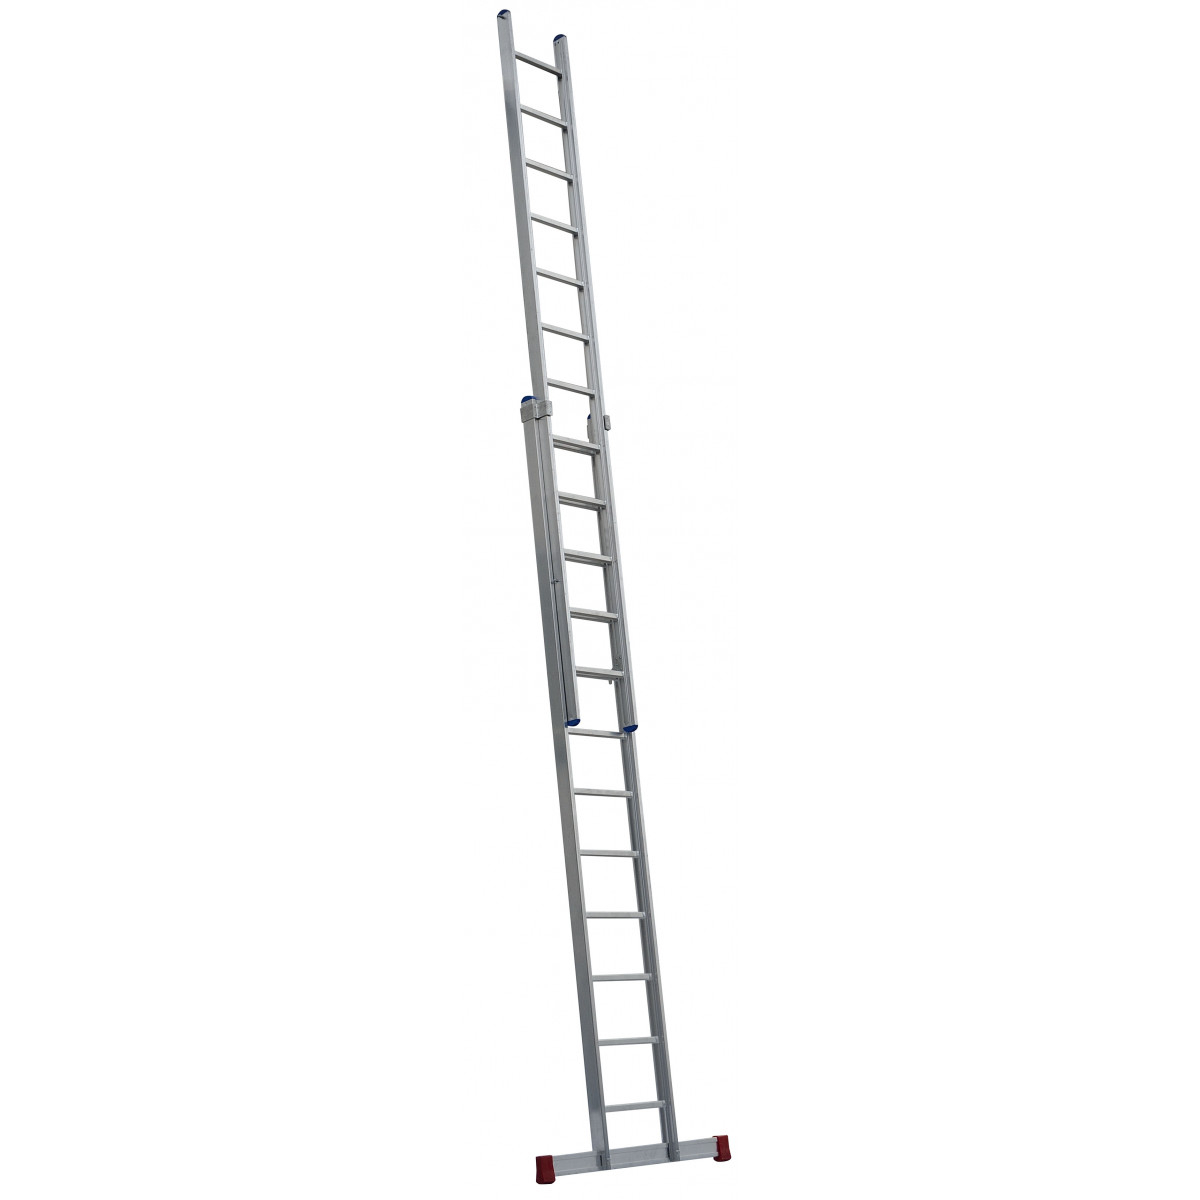 Schiebeleiter Industrieausführung, 2-teilig, 41/47cm breit verschweißt 2x14 Sprossen/Stufen